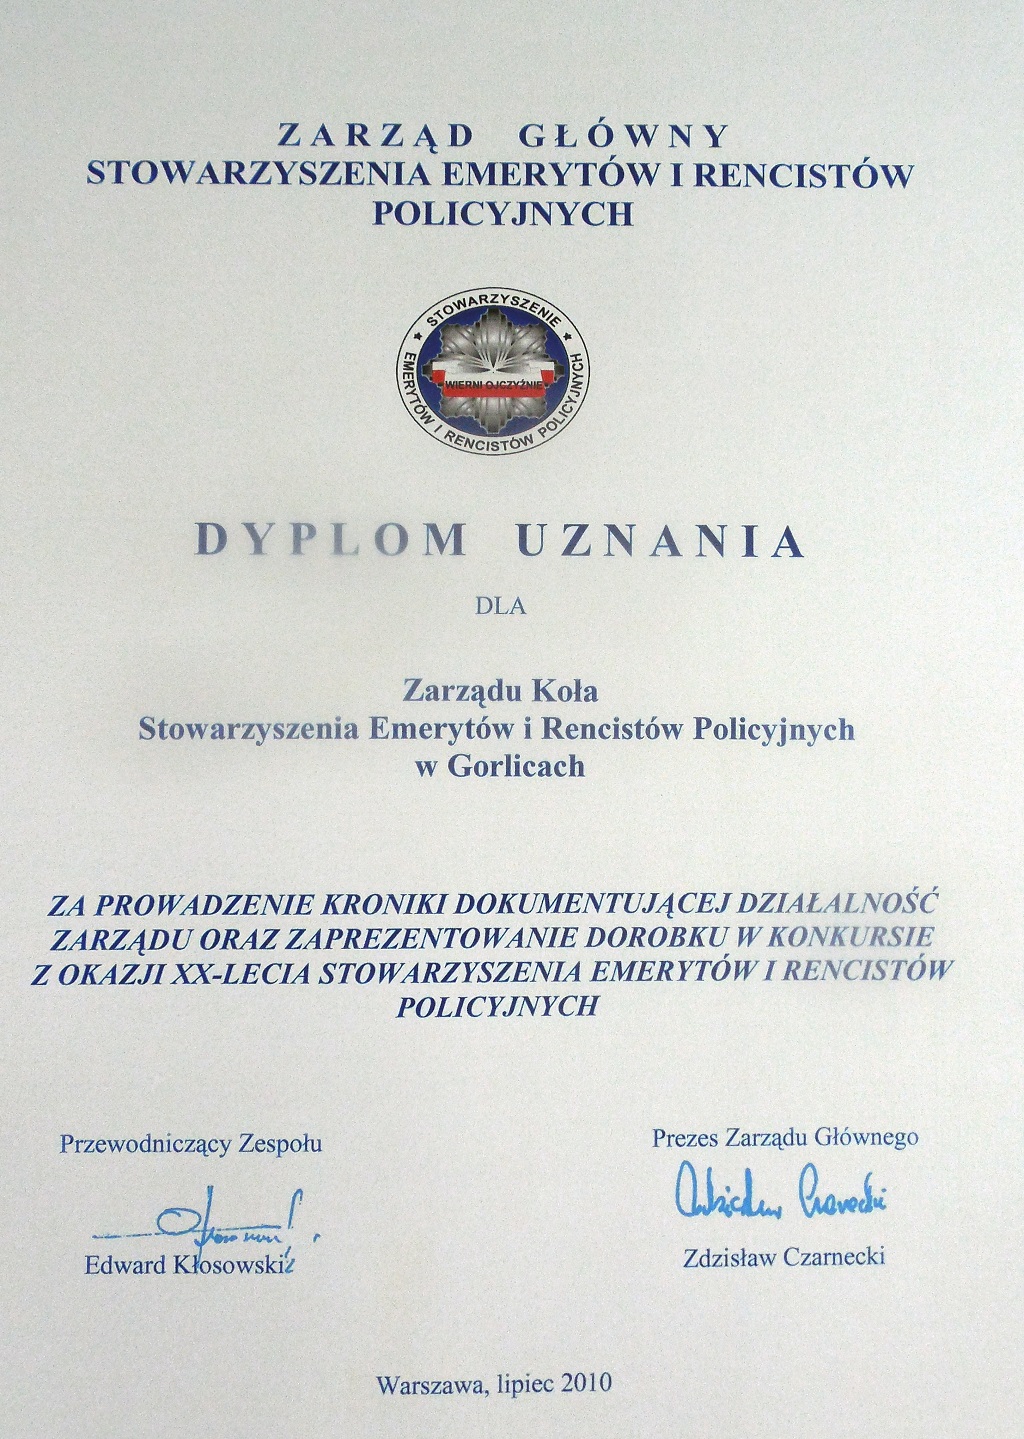  Dyplom uznania          